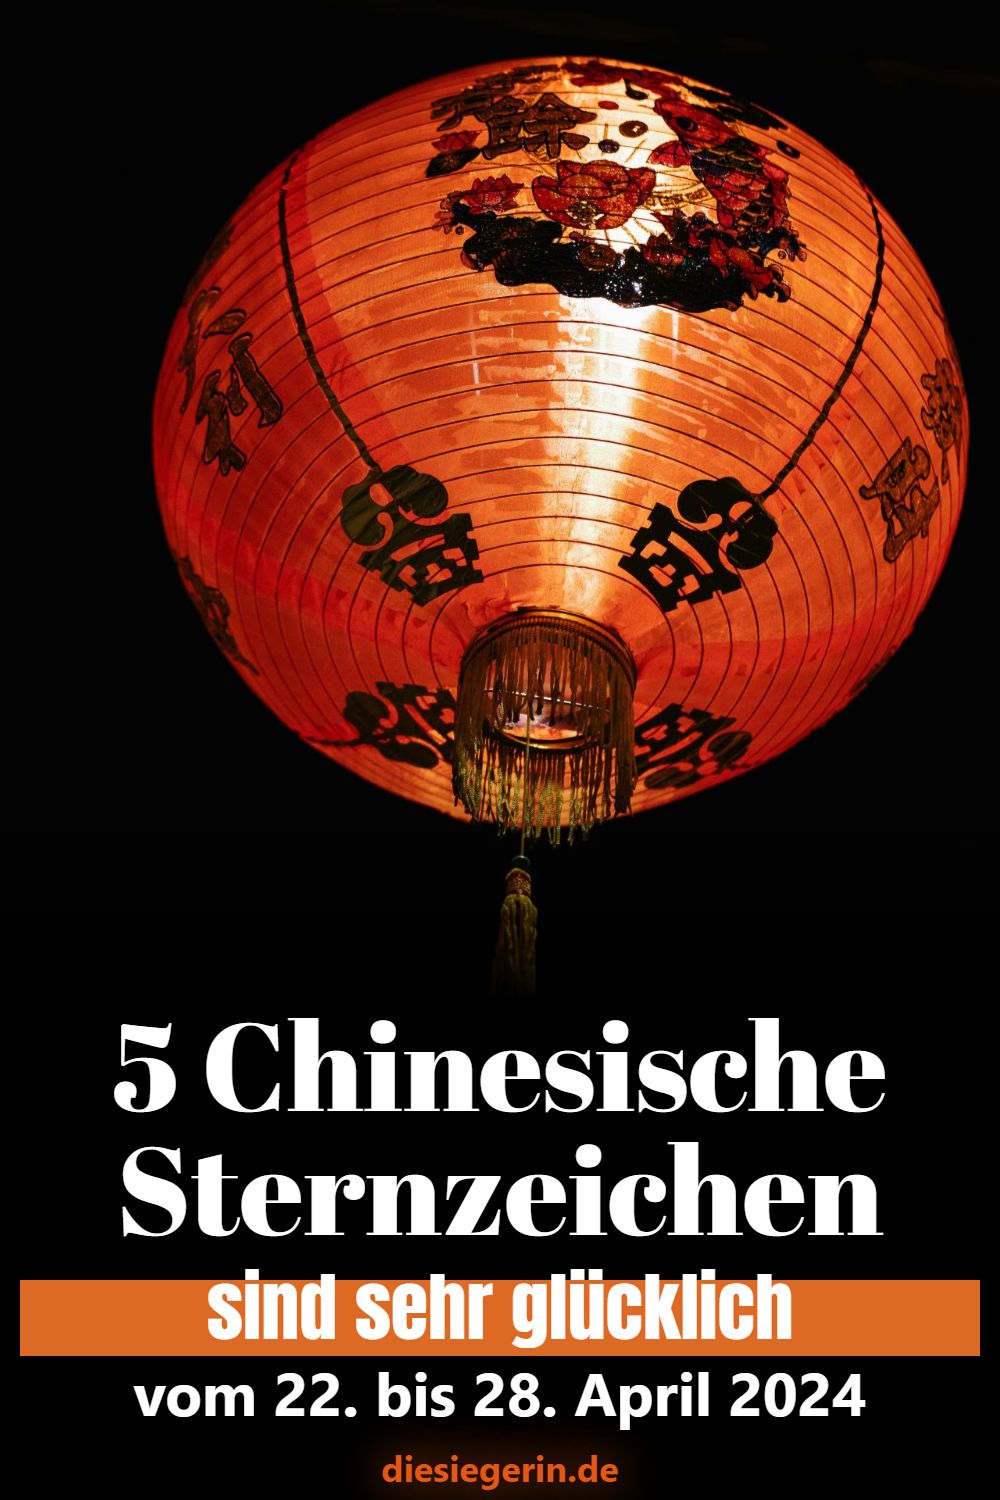 5 Chinesische Sternzeichen sind sehr glücklich vom 22. bis 28. April 2024